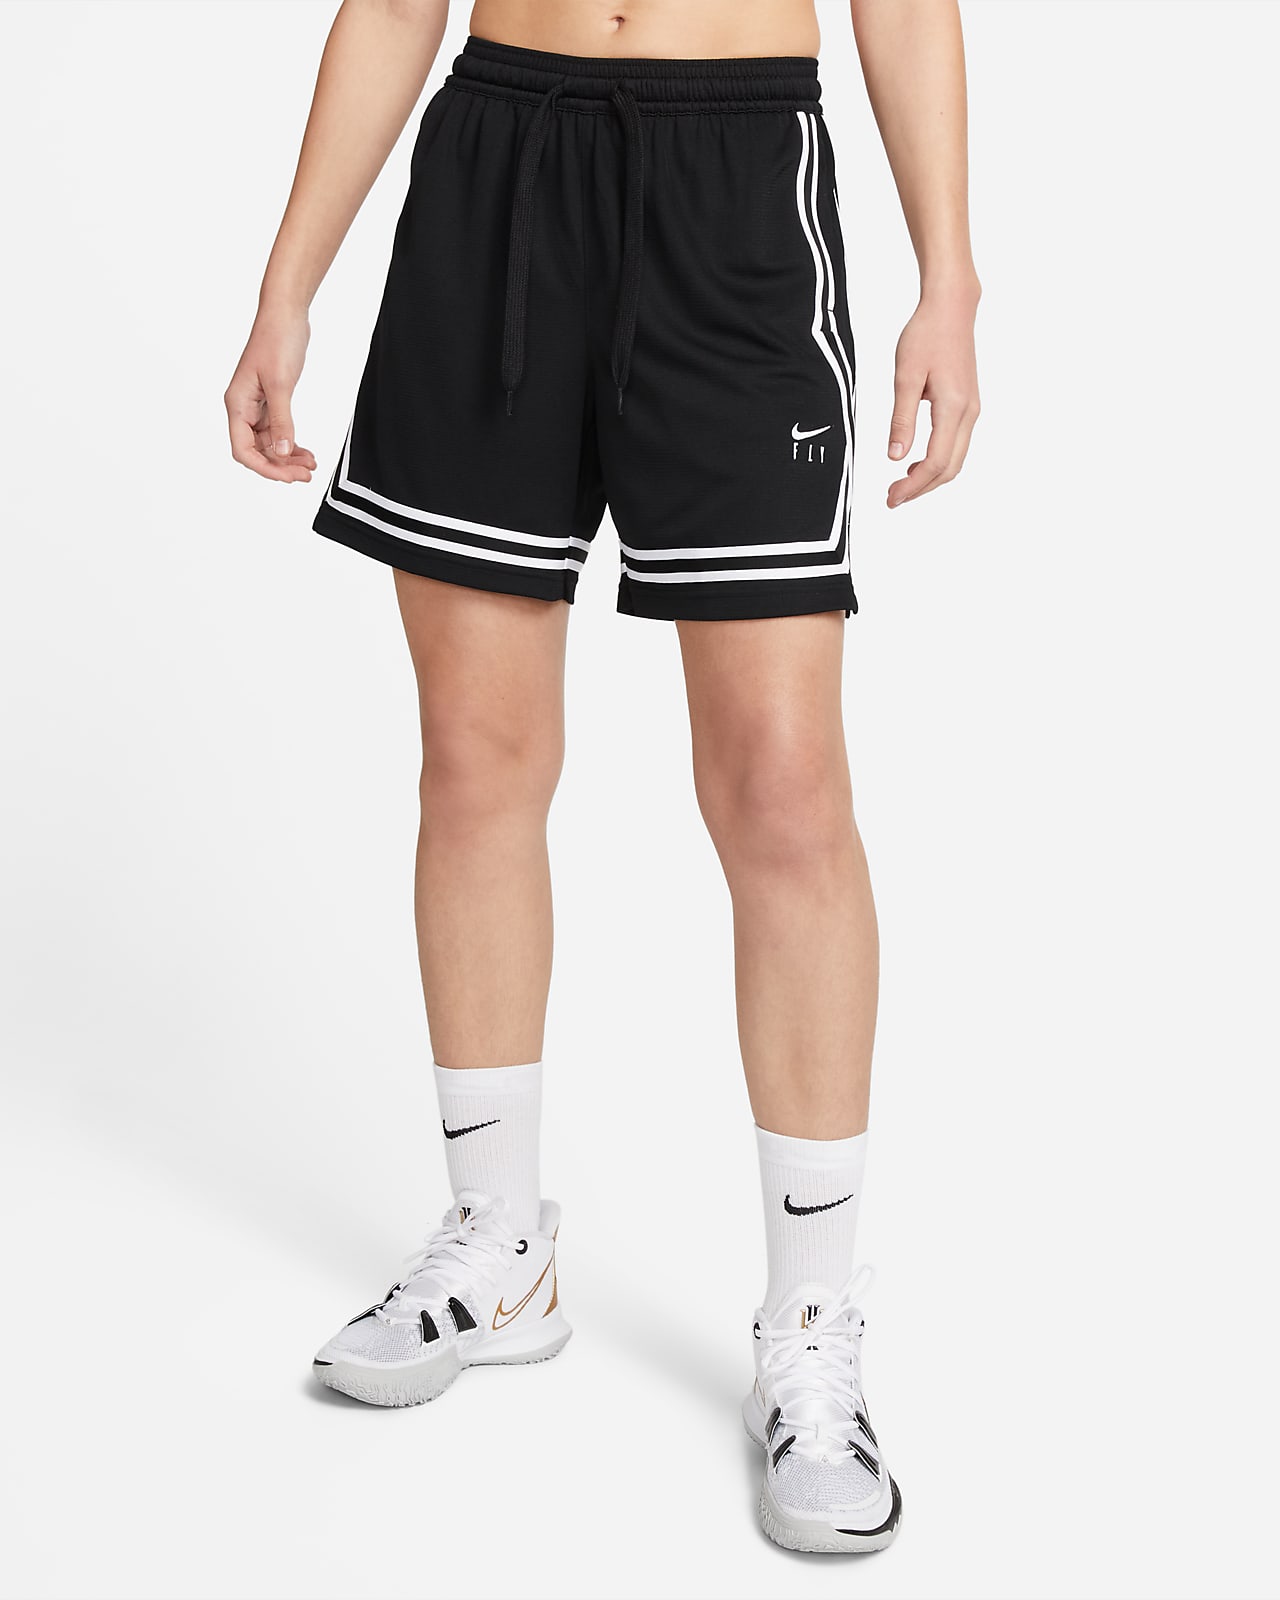 Nike Fly Crossover női kosárlabdás rövidnadrág